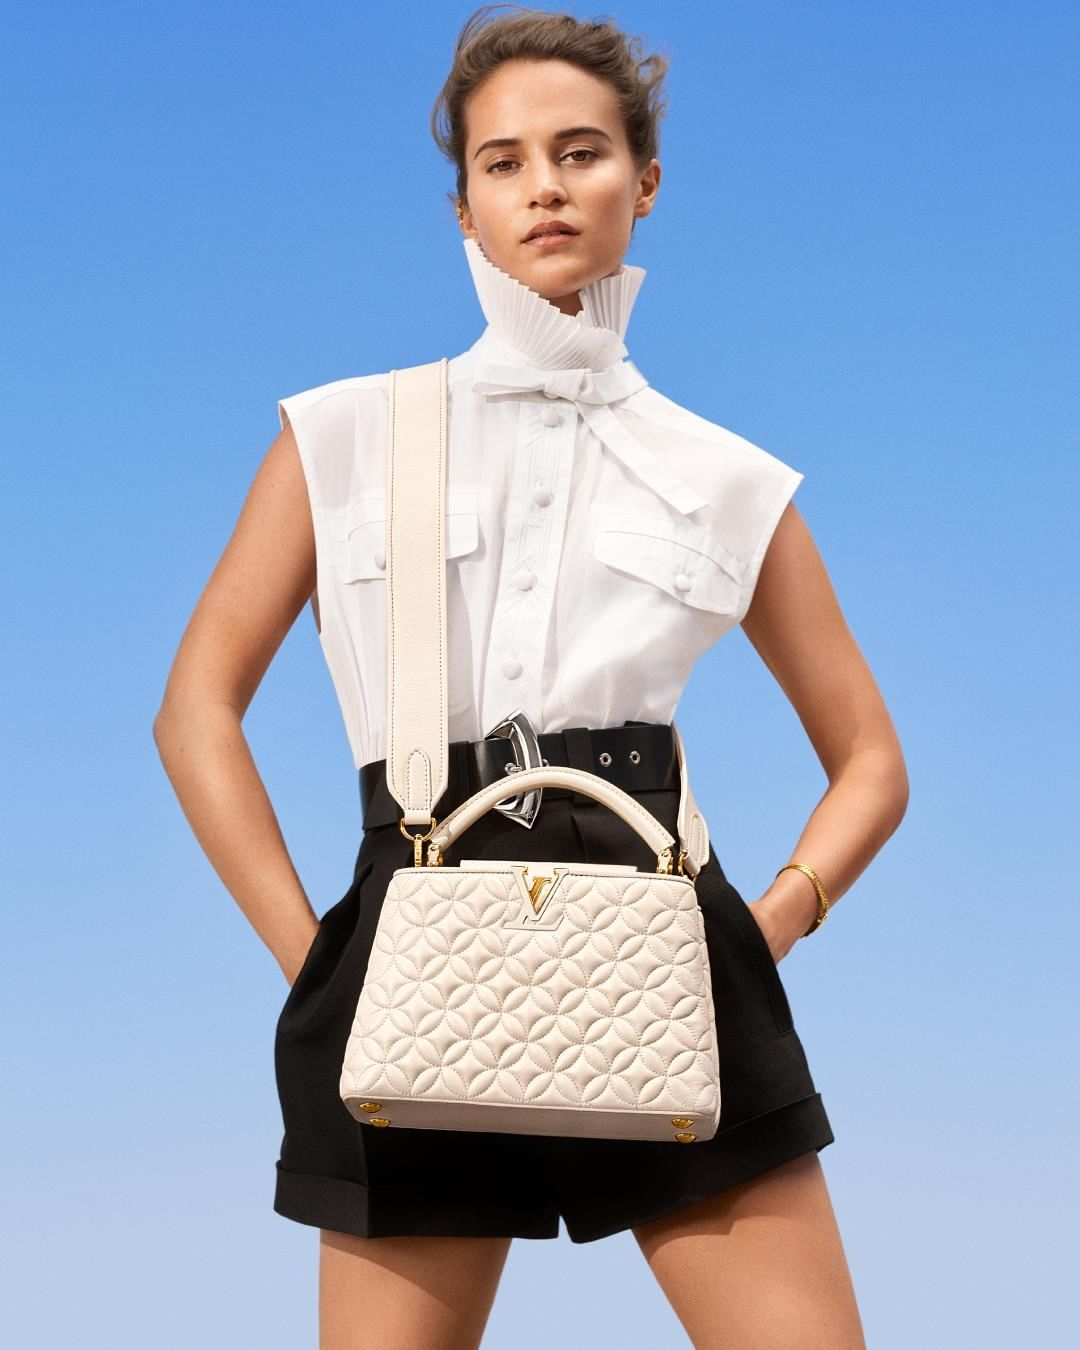 Bolsa Louis Vuitton Neverfull - A bolsa de luxo perfeita para o dia a dia 